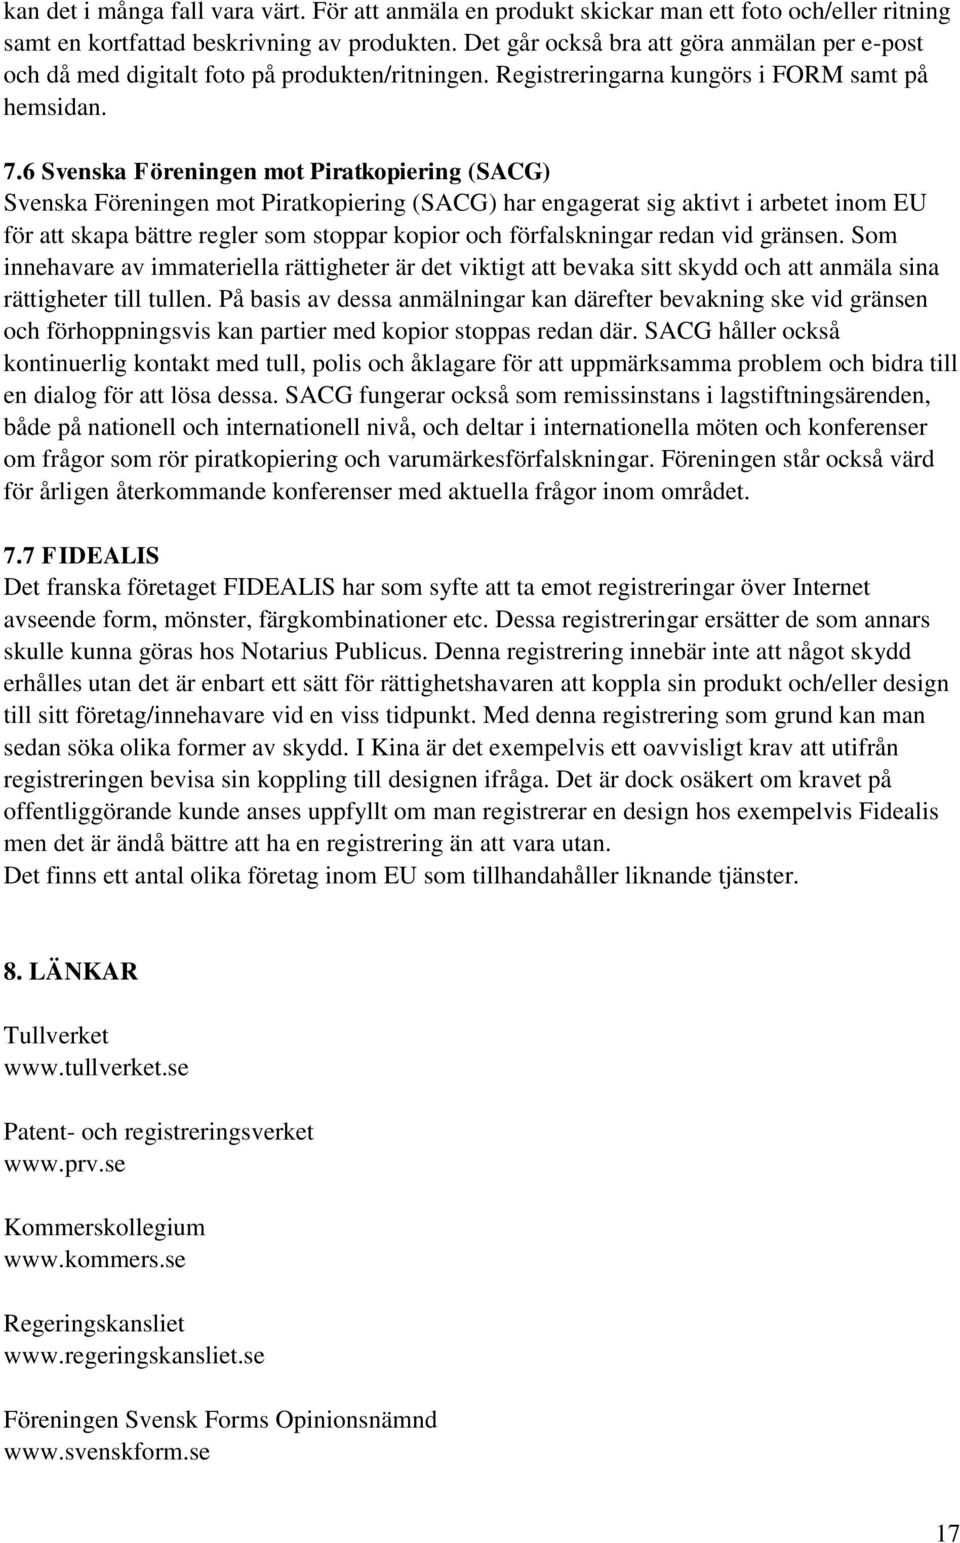 6 Svenska Föreningen mot Piratkopiering (SACG) Svenska Föreningen mot Piratkopiering (SACG) har engagerat sig aktivt i arbetet inom EU för att skapa bättre regler som stoppar kopior och